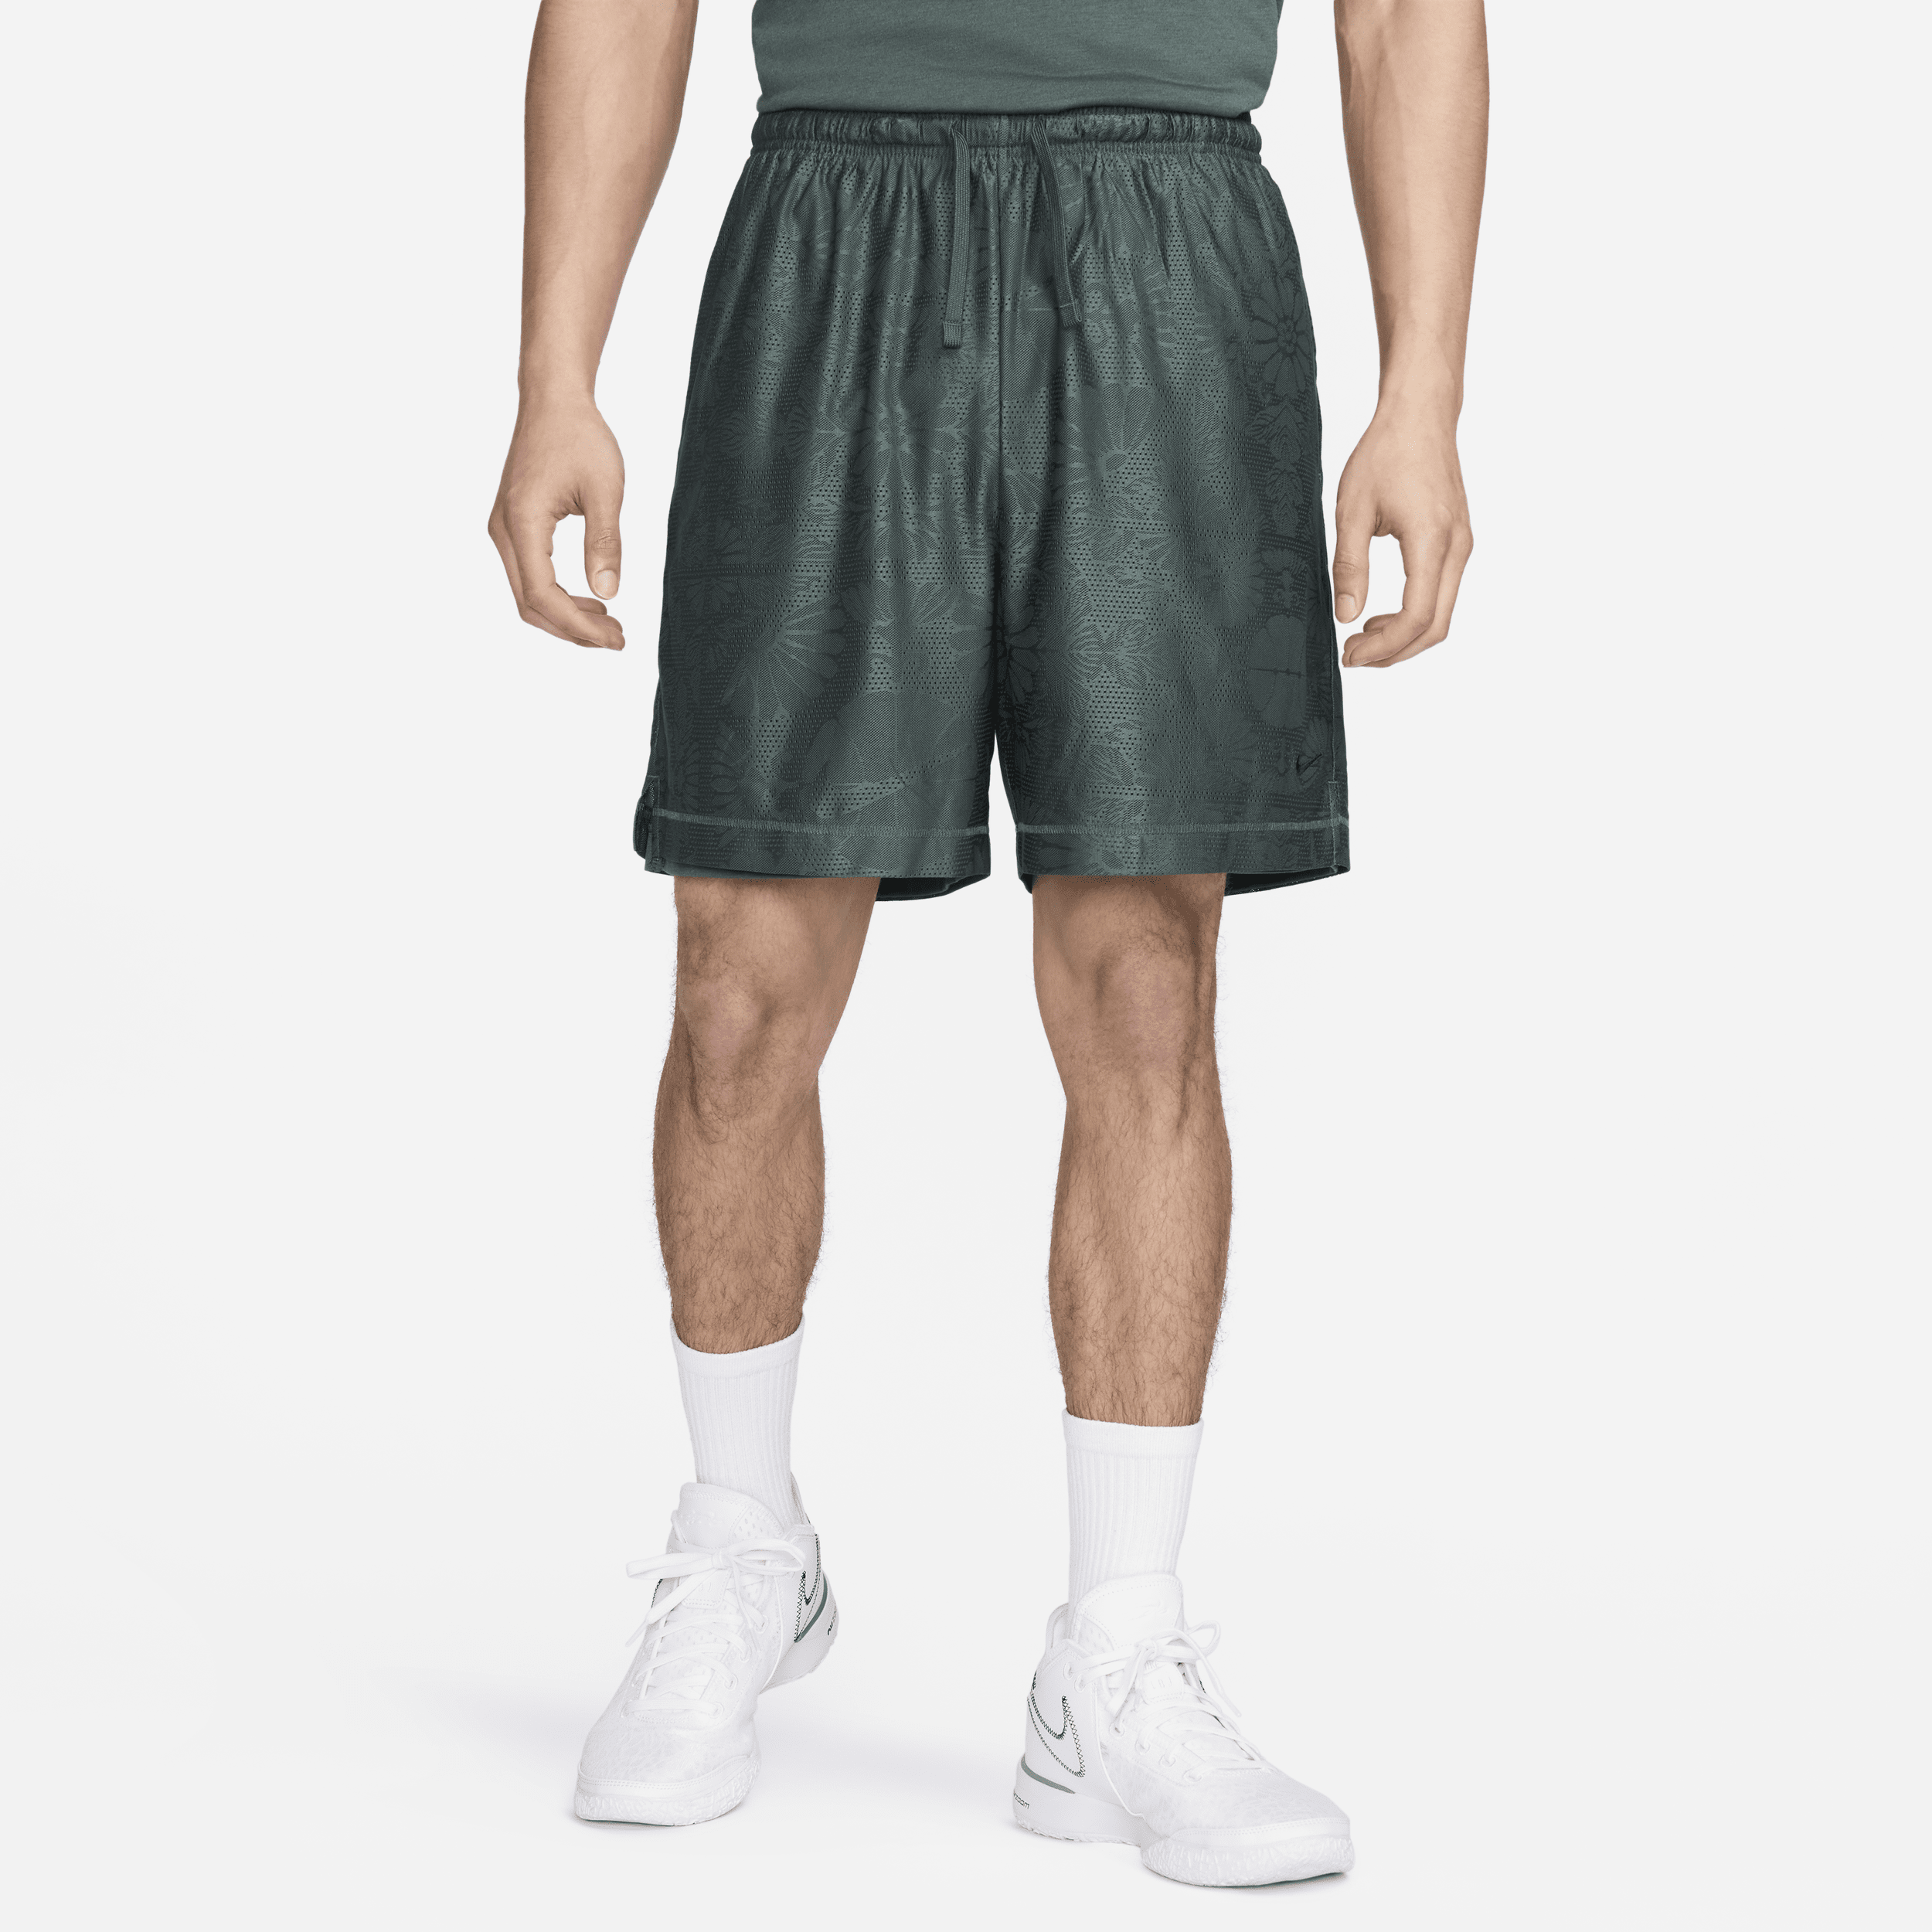 Vendbare Nike Standard Issue Dri-FIT--basketballshorts (15 cm) til mænd - grøn